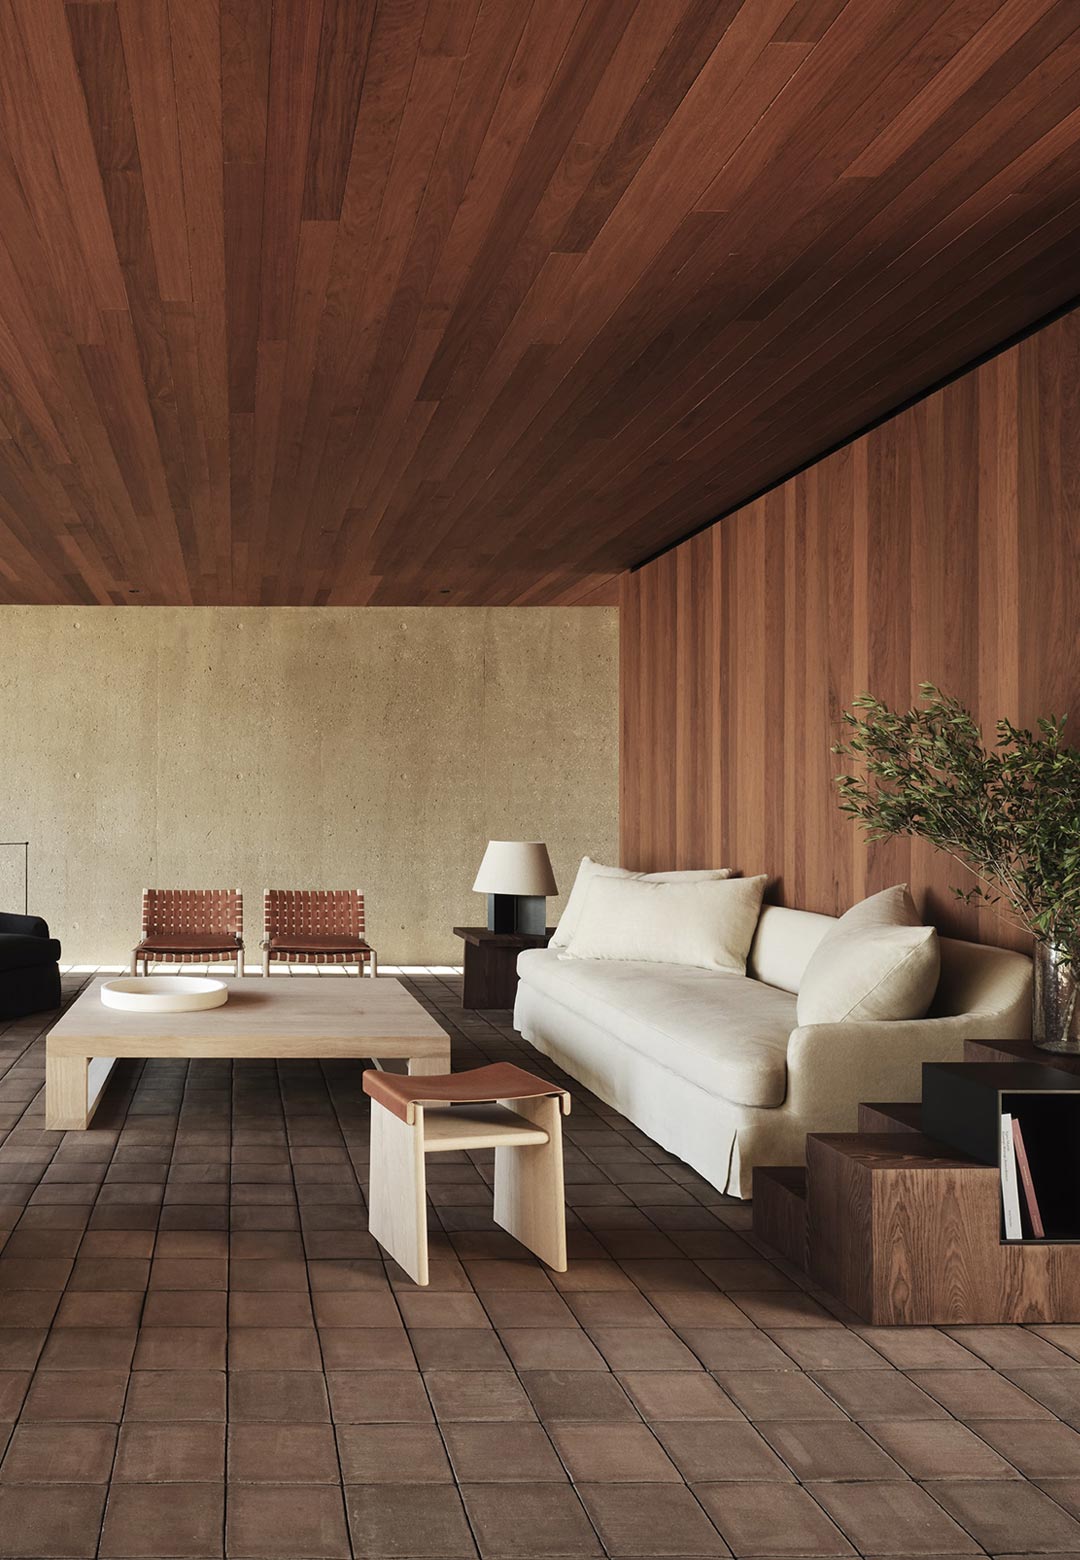 Vincent Van Duysen’s Zara Home + collection infuses surroundings with Zen-like calmness